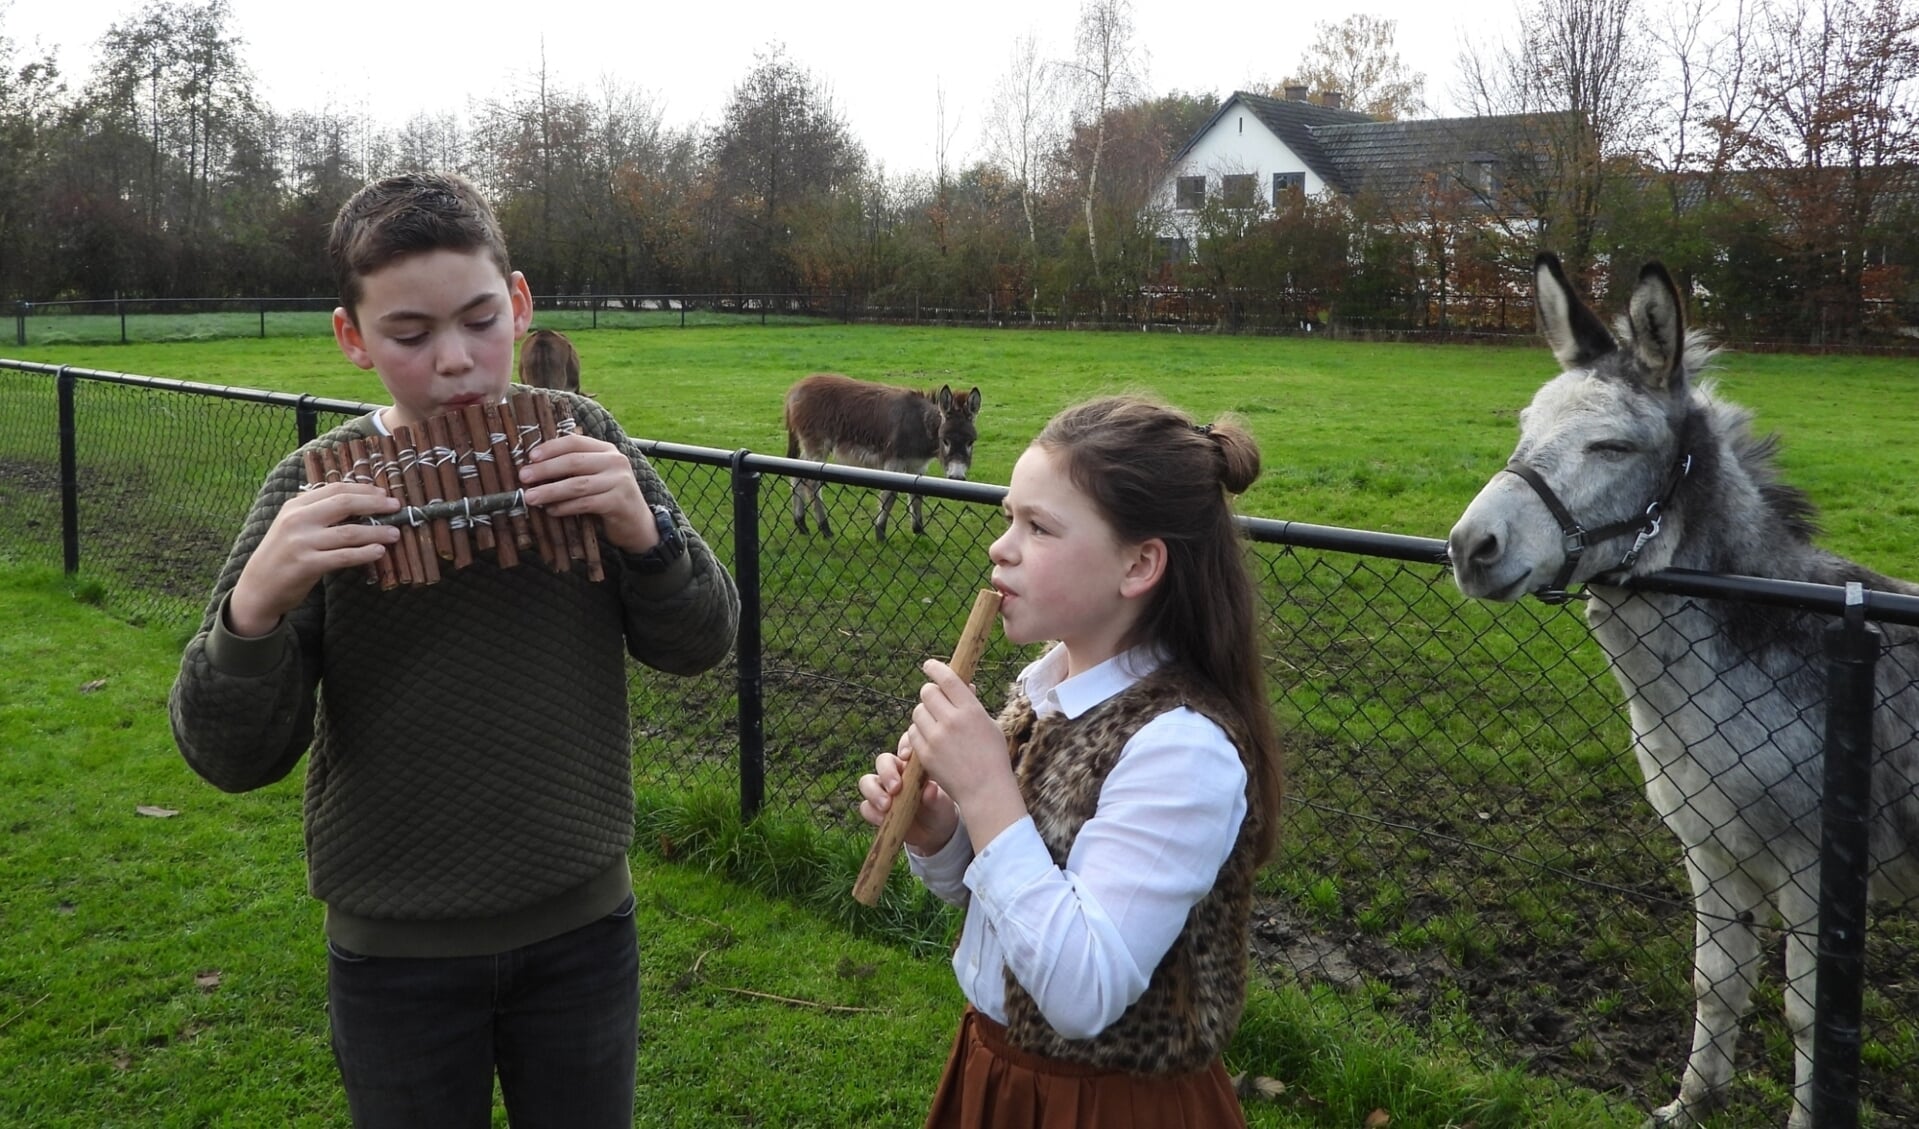 Buurjongen Evan van den Dikkenberg uit Ederveen probeert de panfluit en zus Leah een fluit.